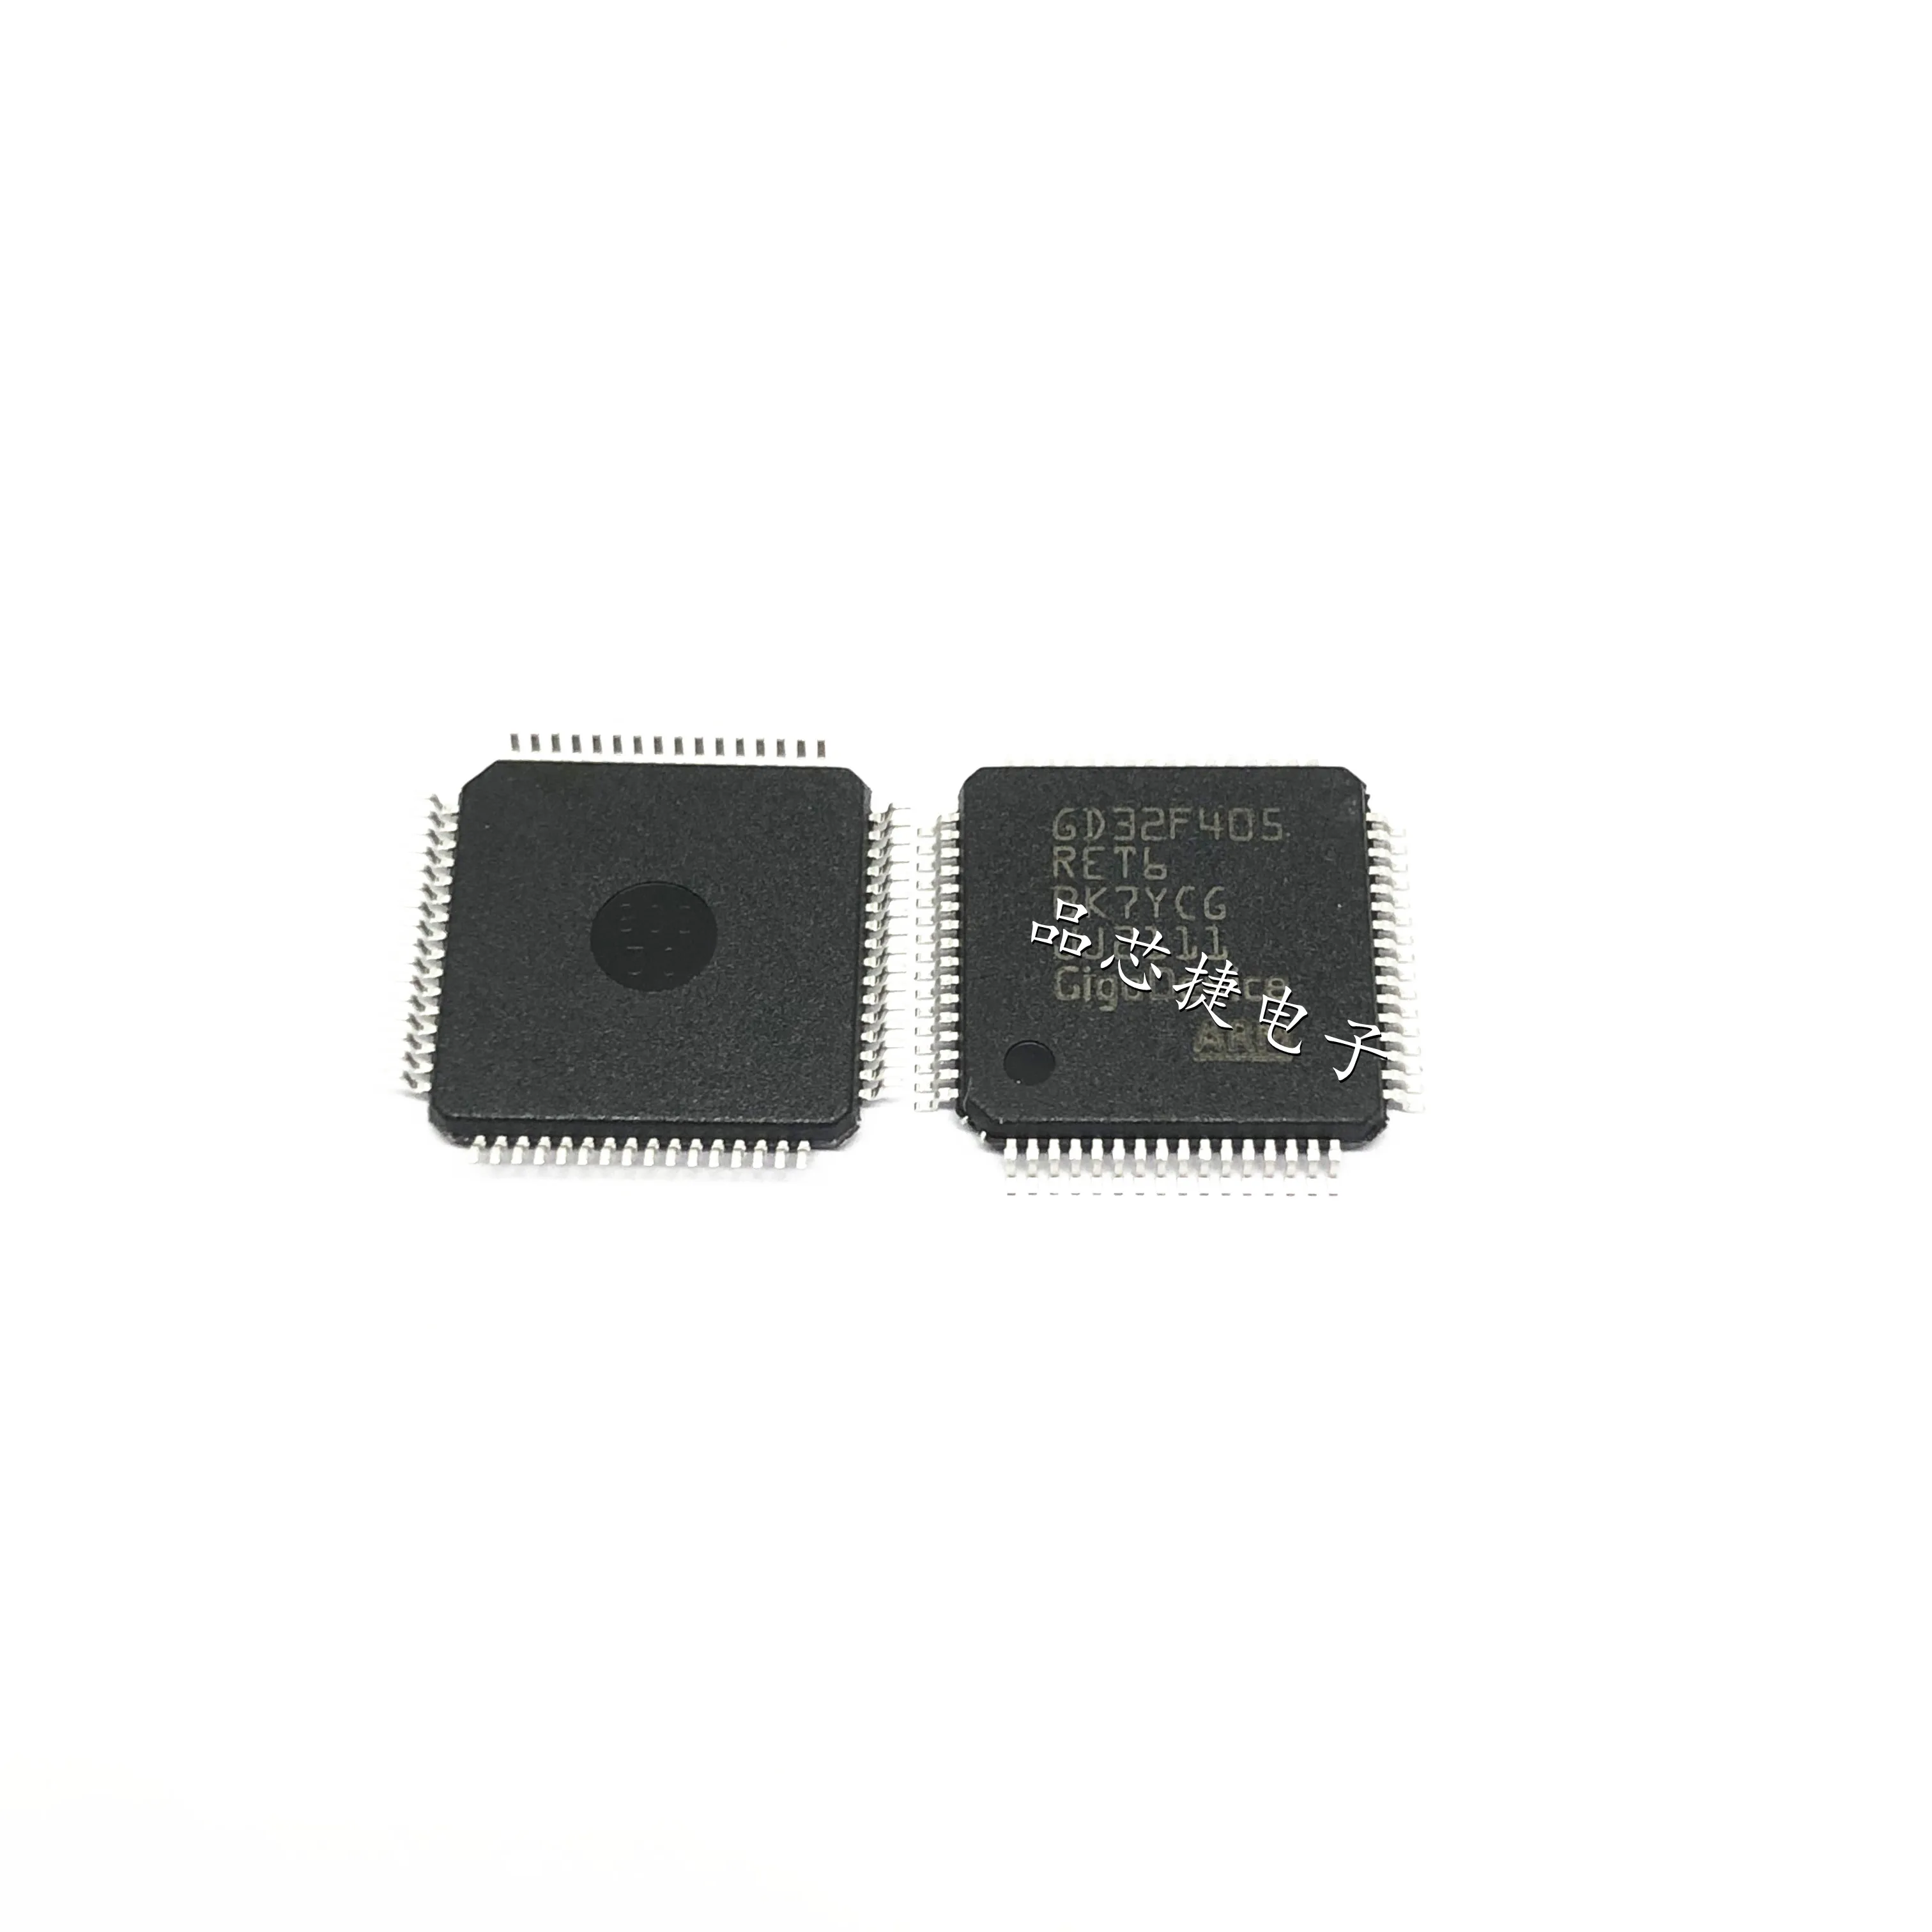 1 шт./лот GD32F405RET6 LQFP-64 GD32F405 32-РАЗРЯДНЫЙ микроконтроллер MCU ARM